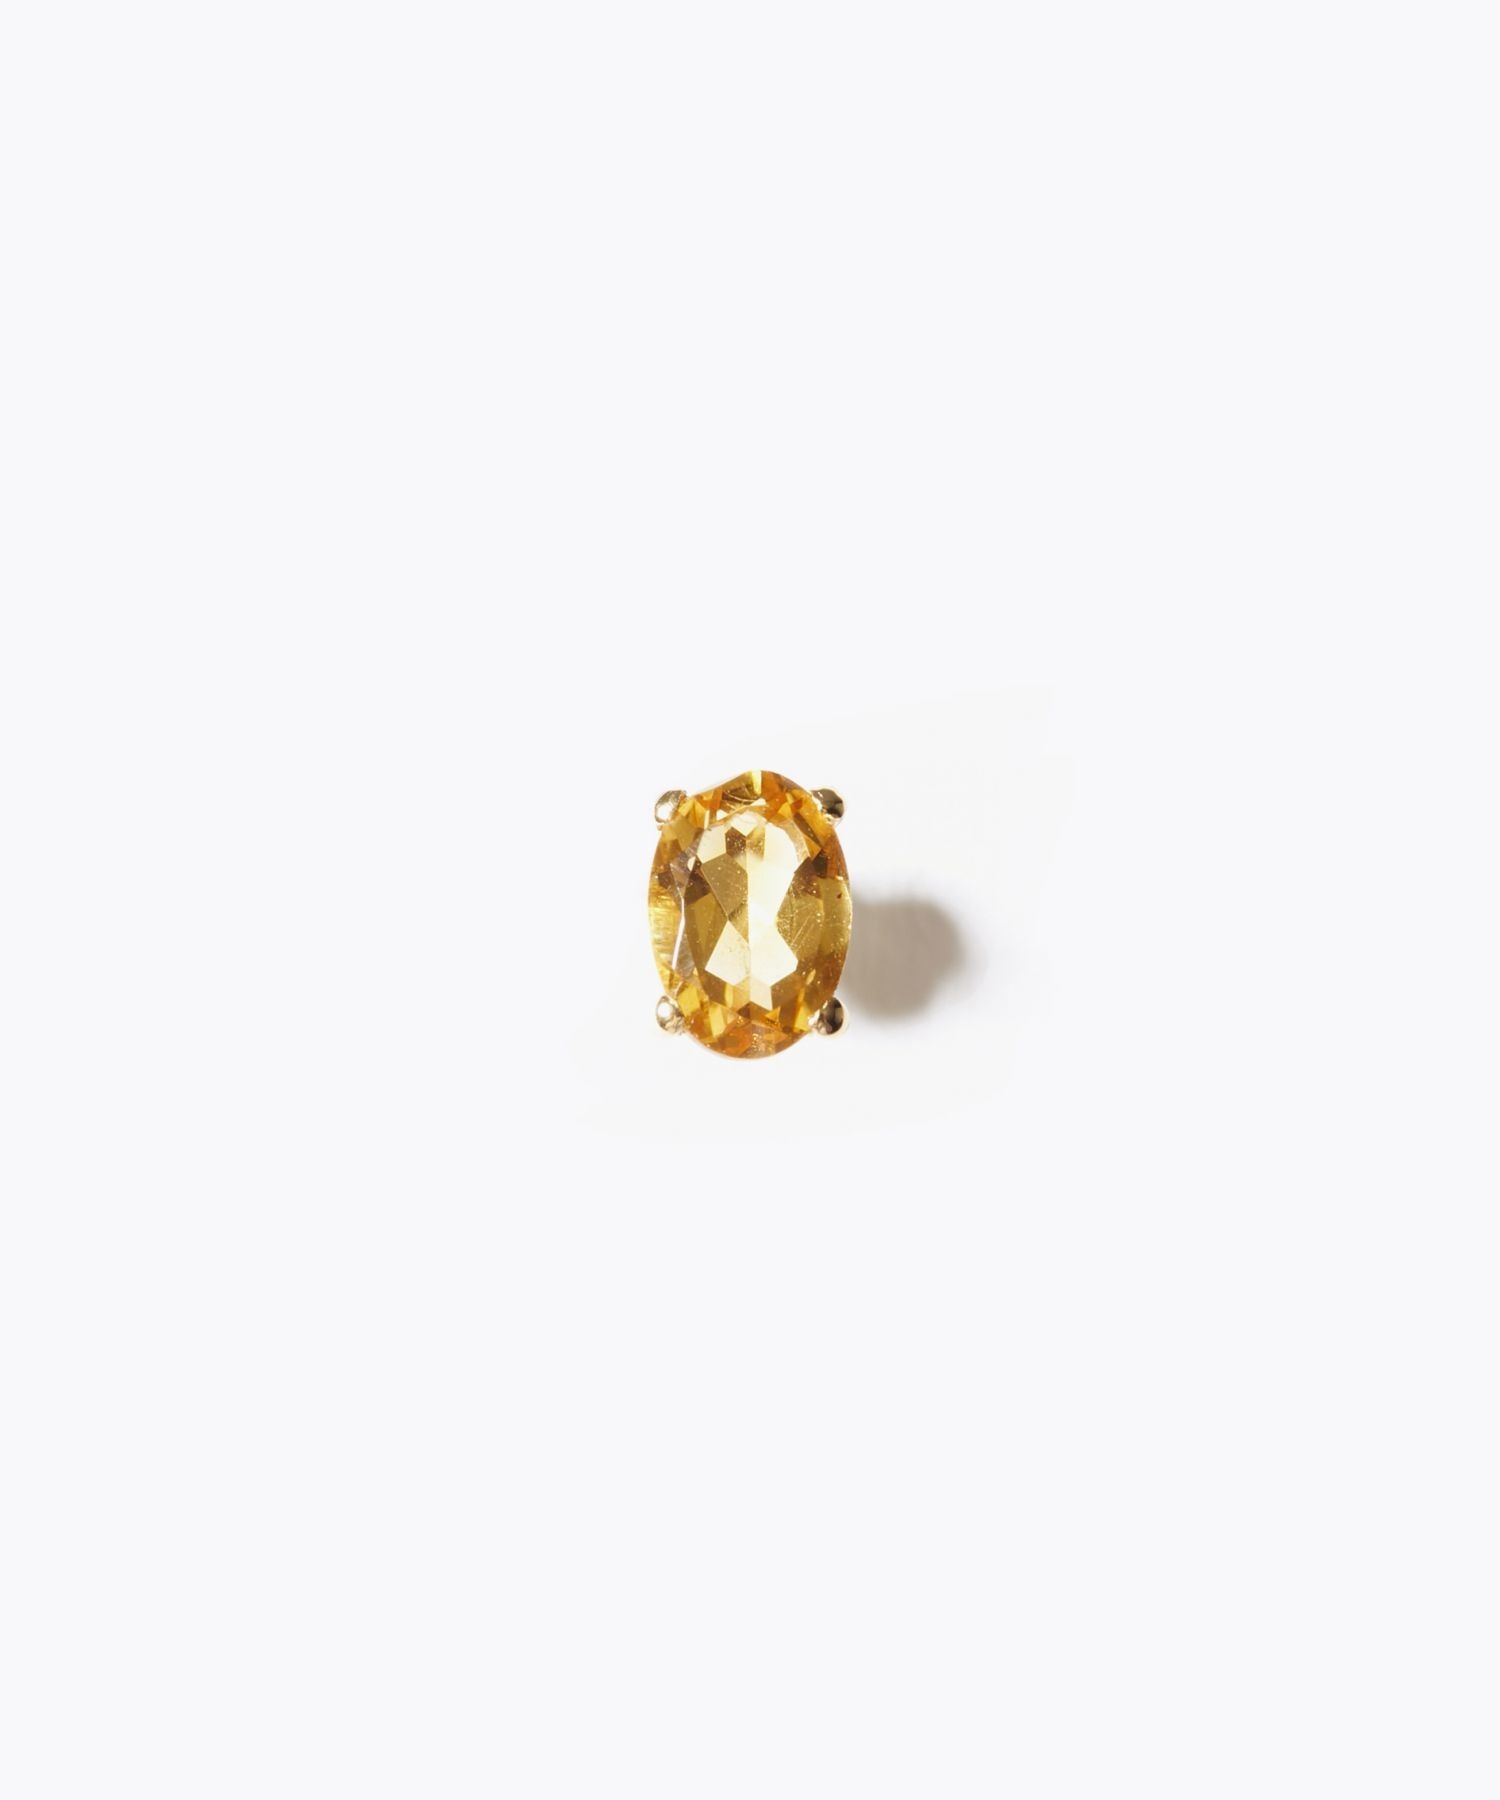 [eden] K10 oval citrine stud single pierced earring